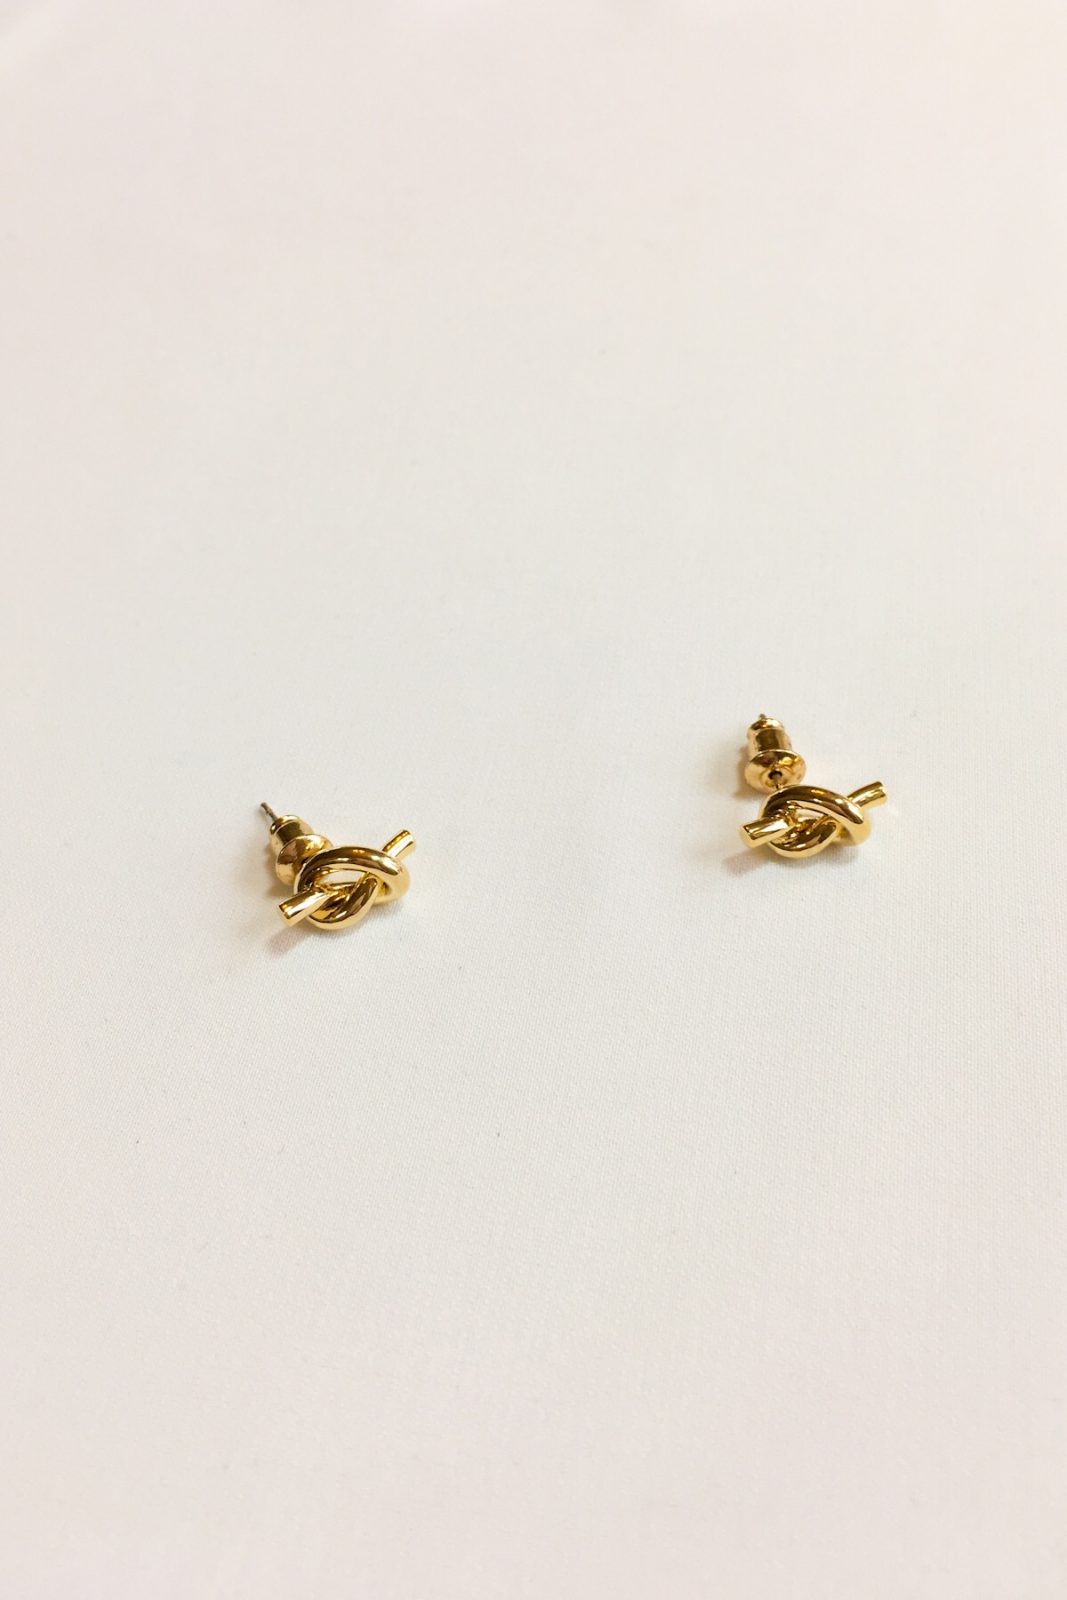 SKYE shop modern minimalist women fashion accessories Noe 18K Gold Knot Earrings 2